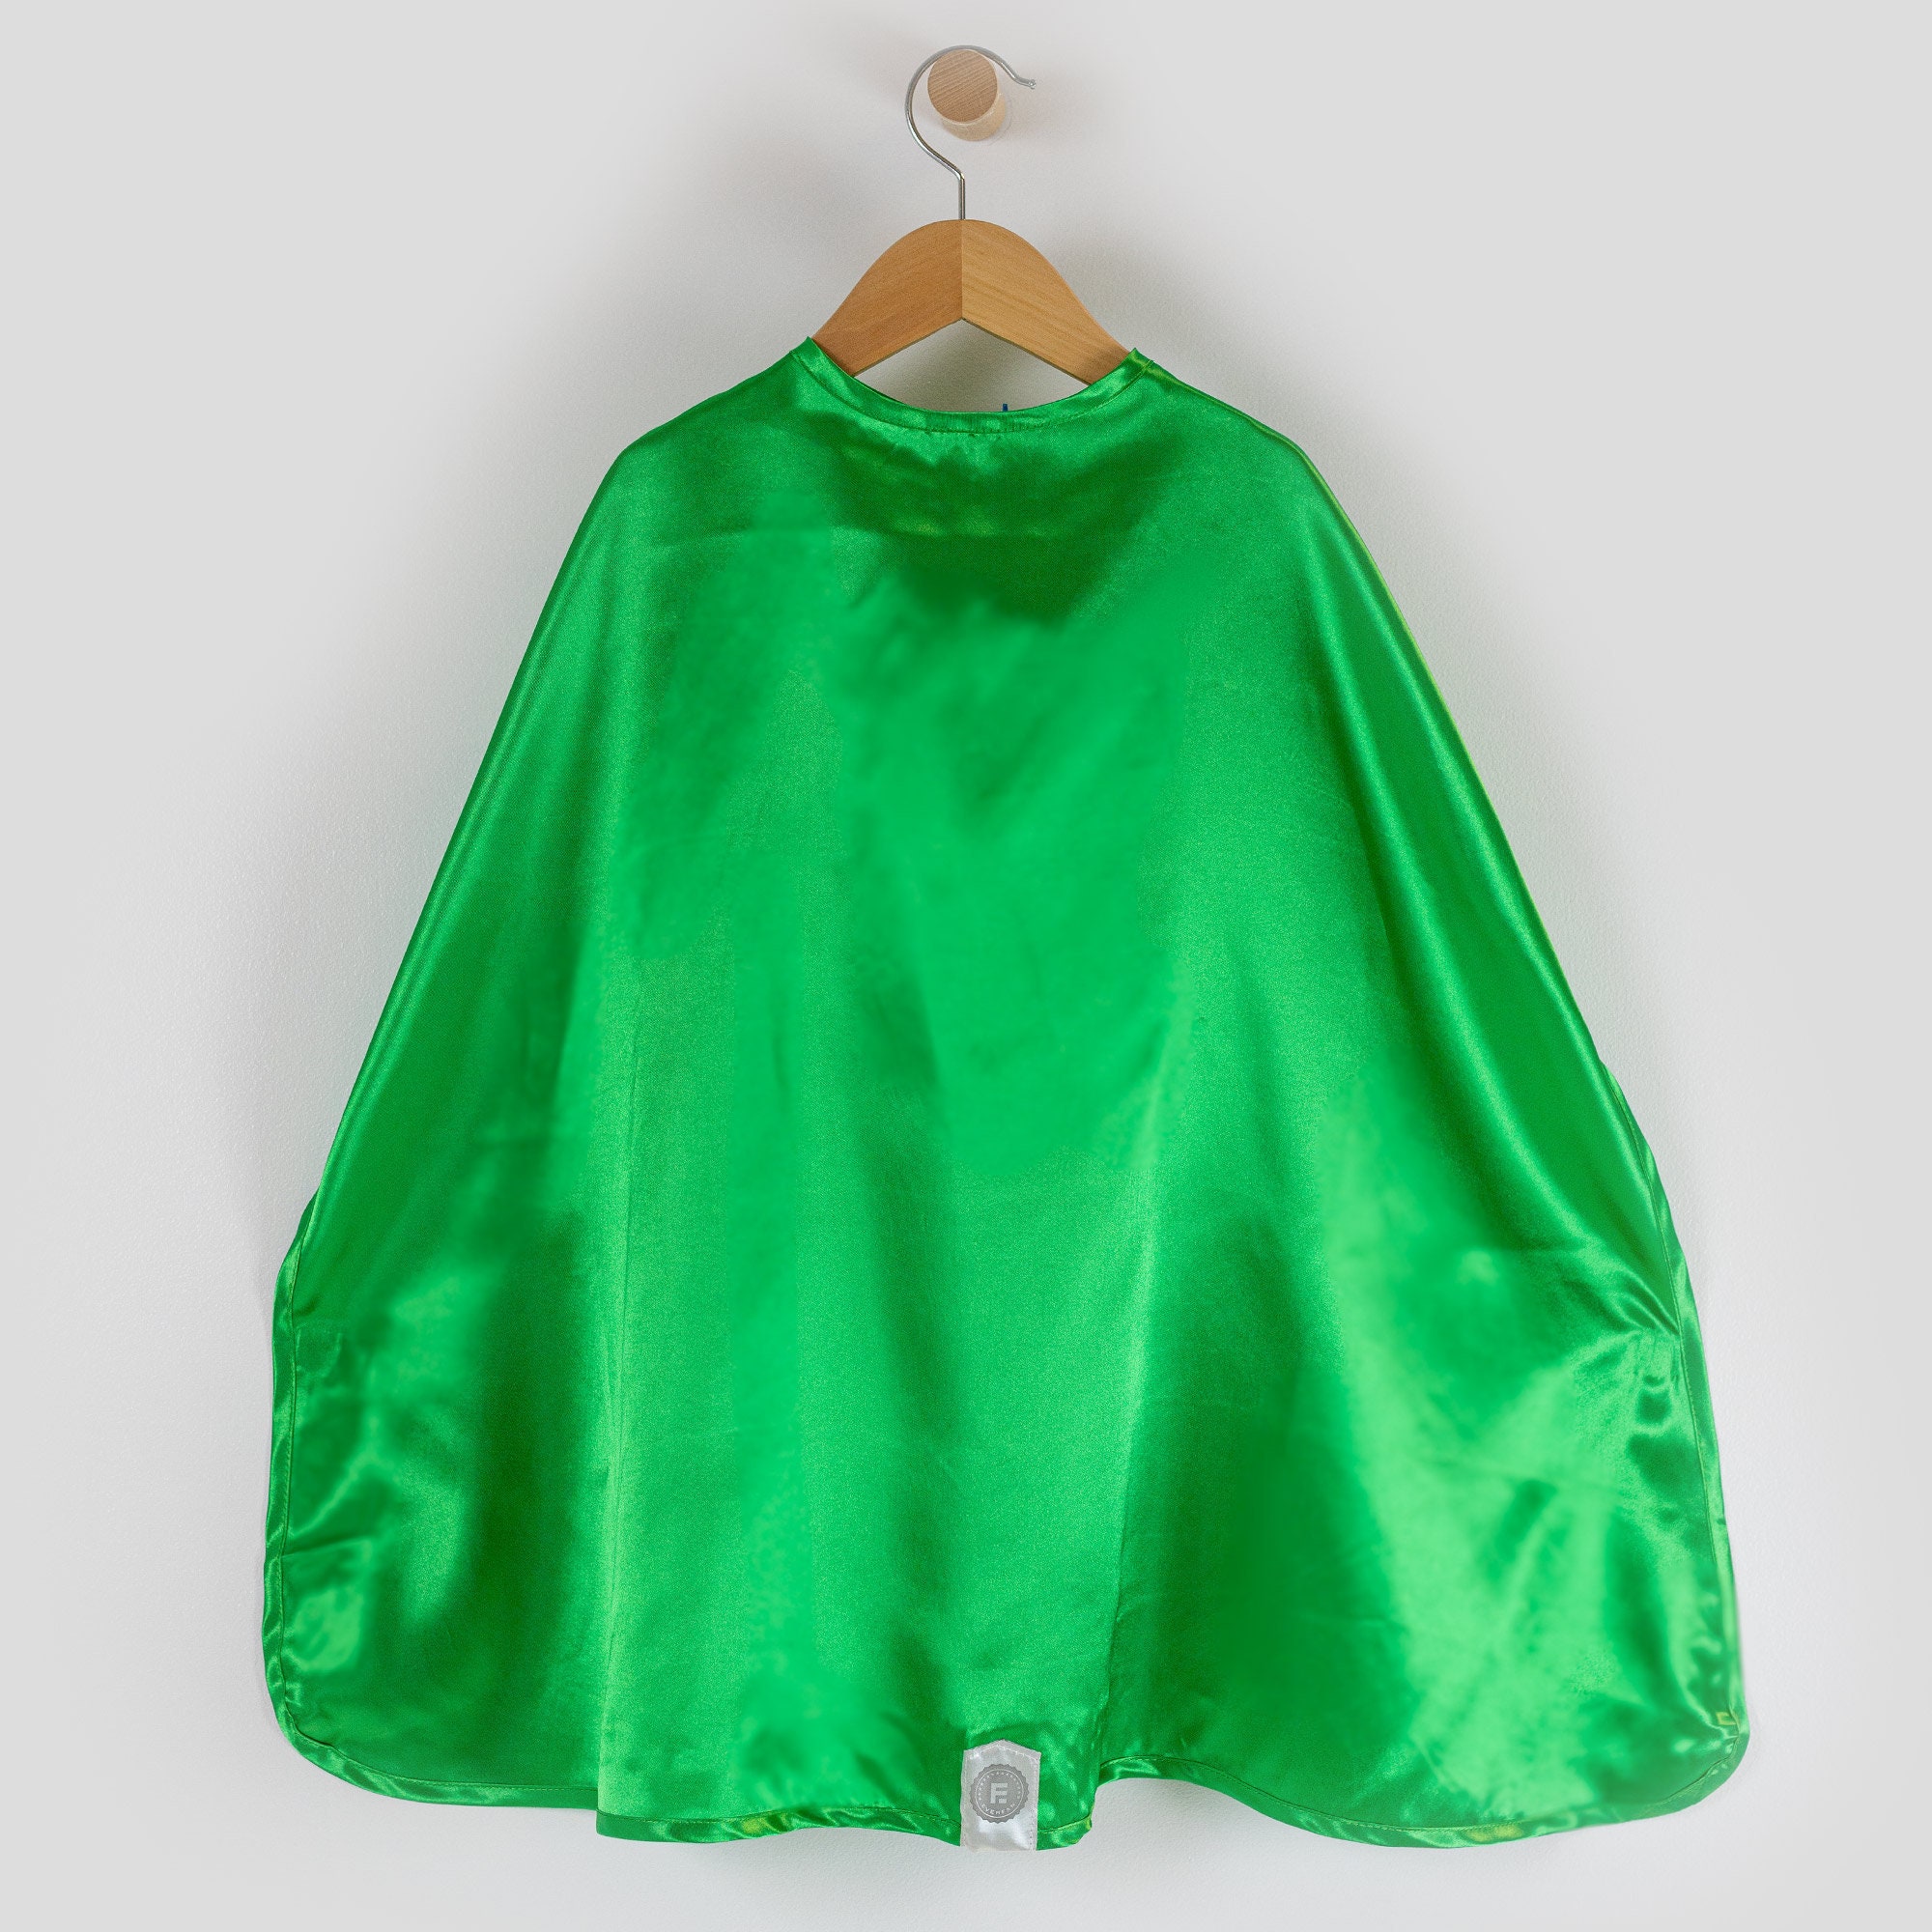 Las mejores ofertas en Disfraz verde de superhéroe Capes